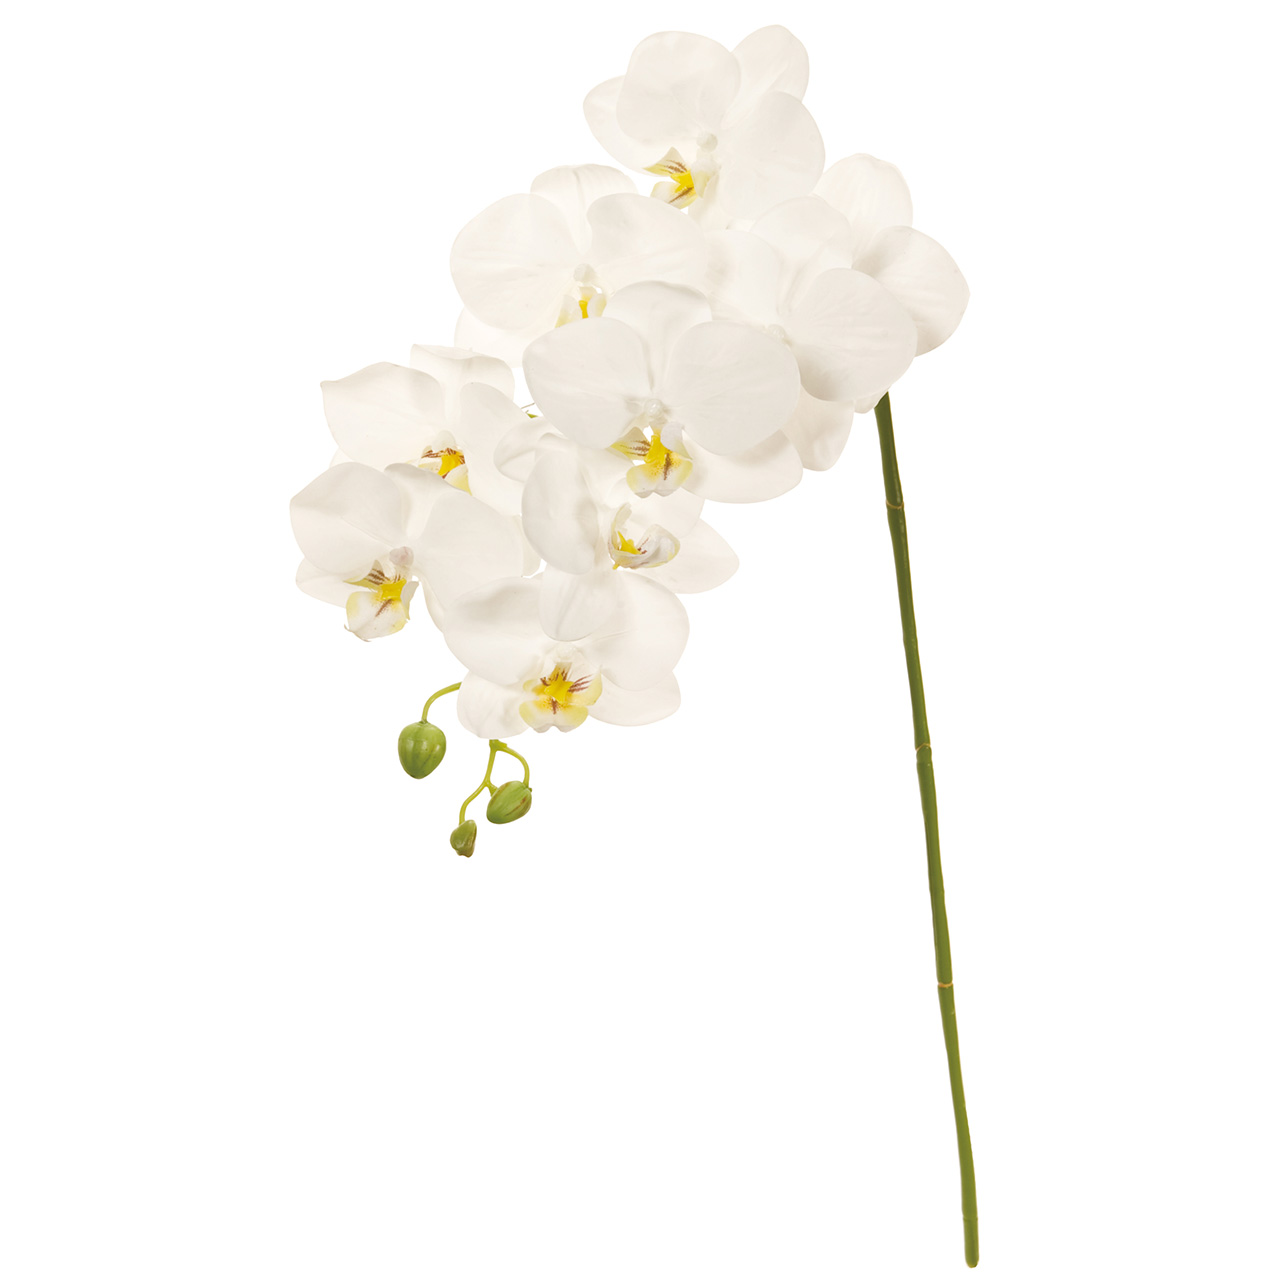 マイフラ 通販 Magiq バレリーナファレノ M ホワイト アーティフィシャルフラワー 造花 Fm 001 胡蝶蘭 ホワイト Magiq アーティフィシャルフラワー 造花 全国にmagiq 花器 花資材などをお届けします